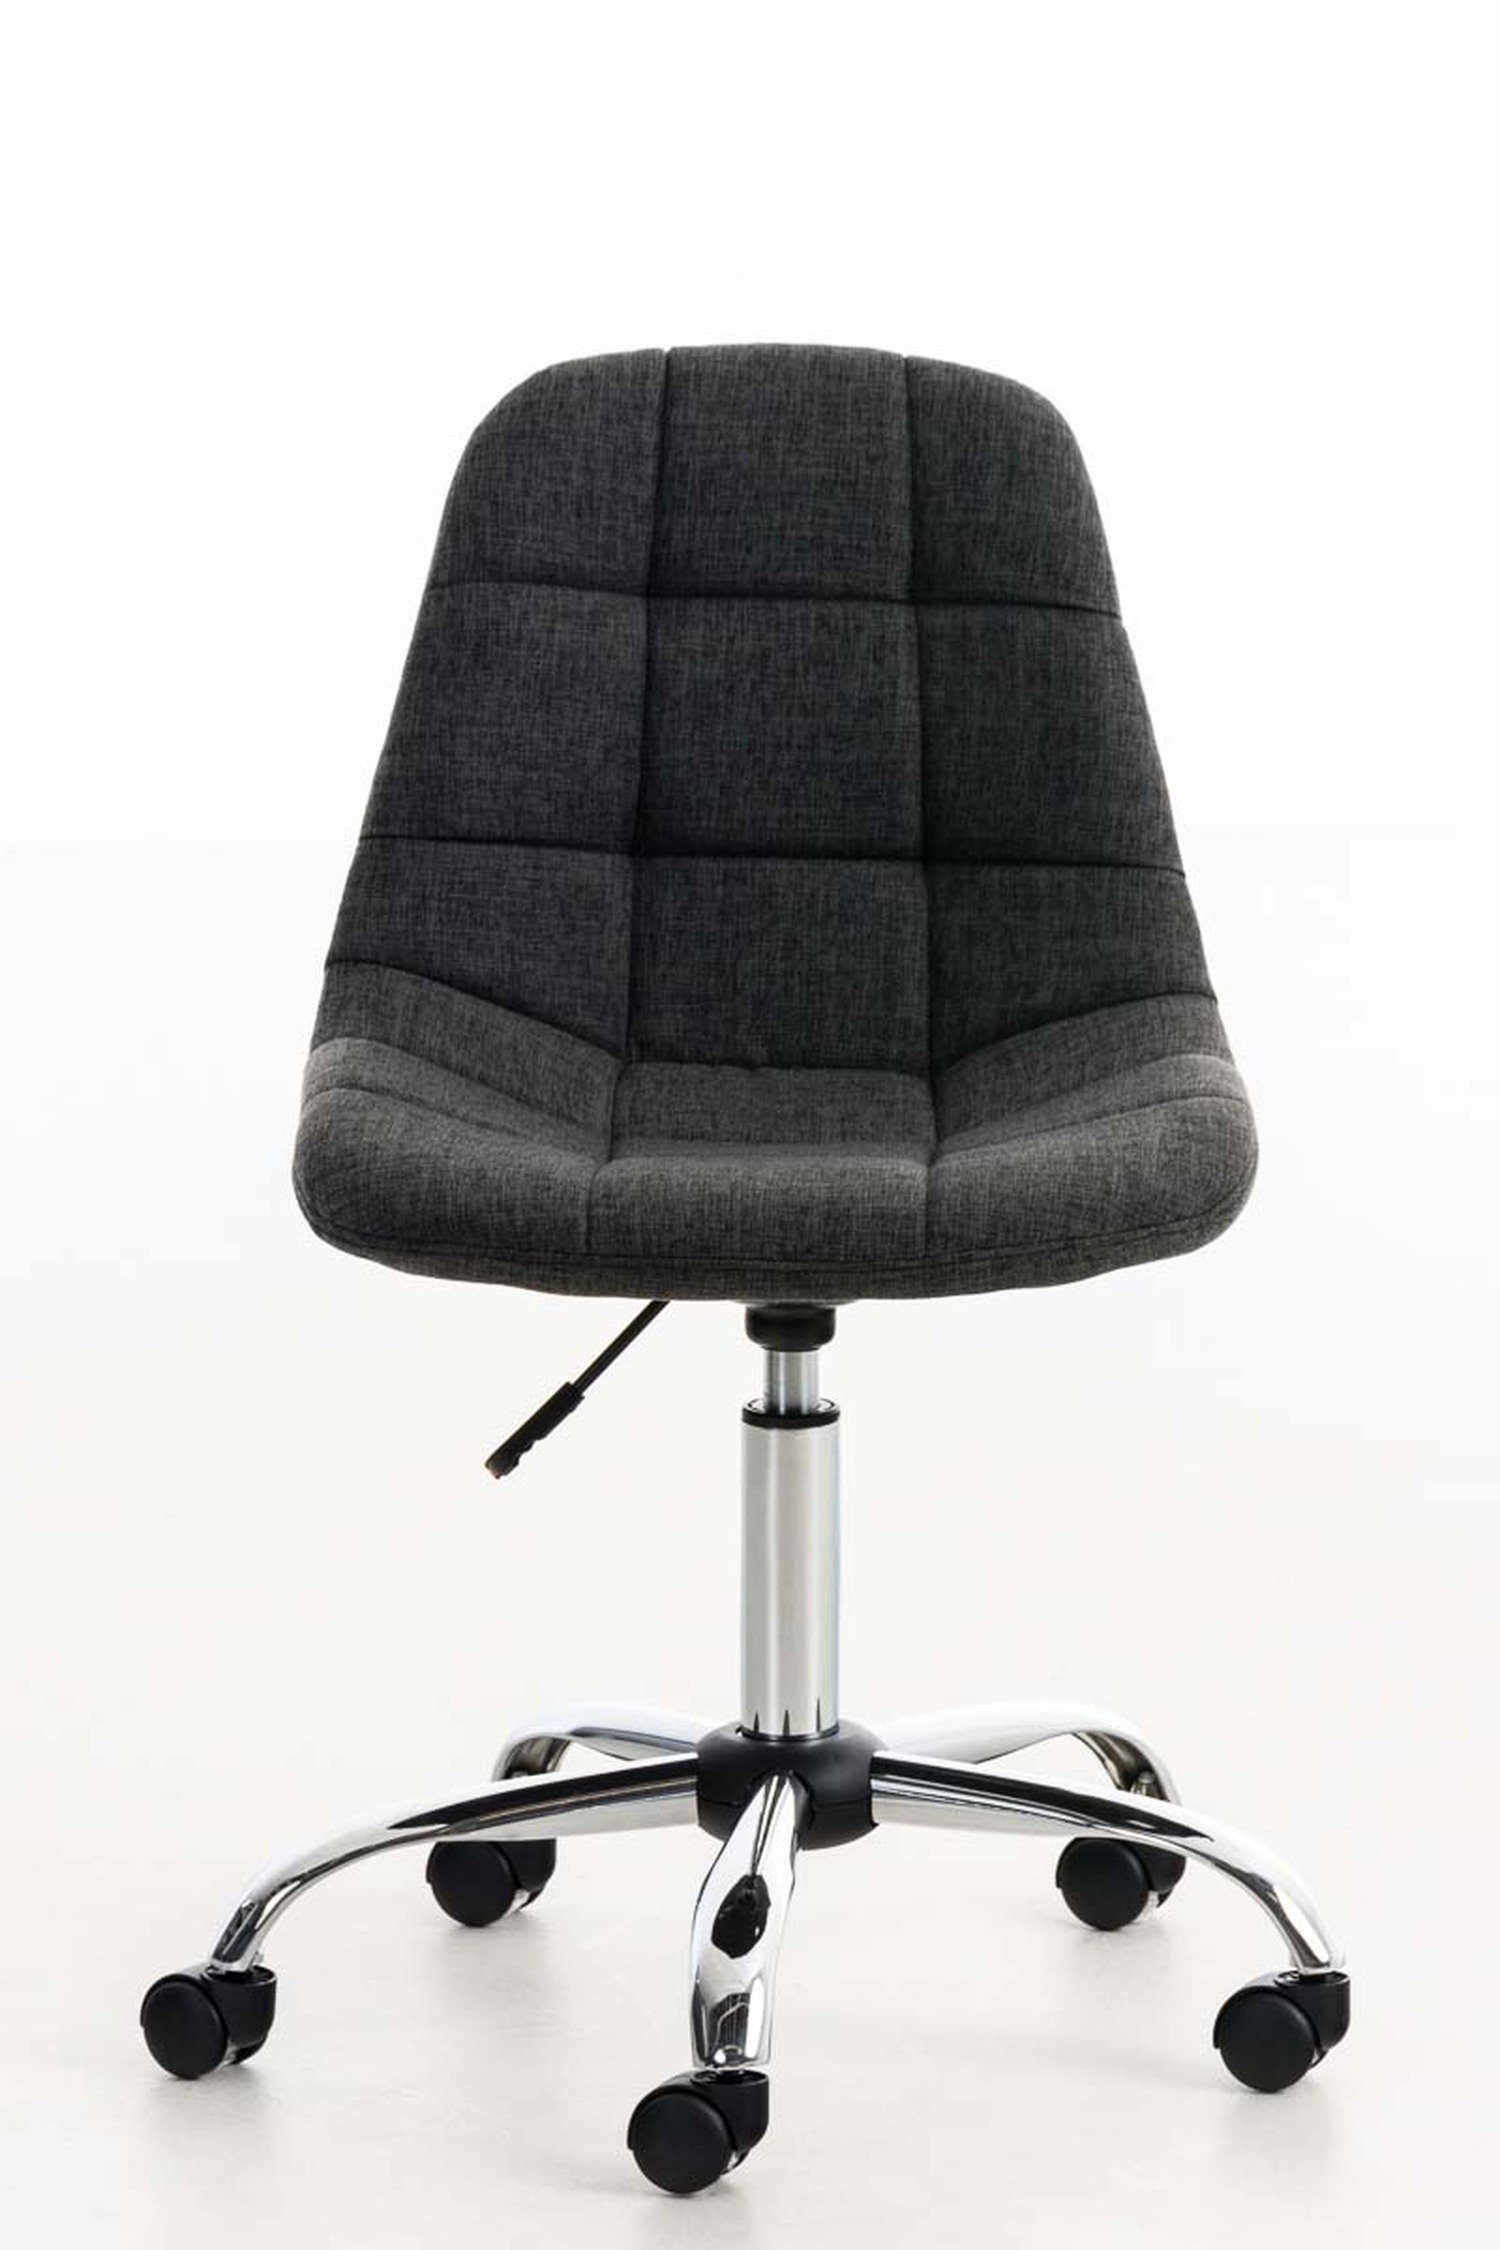 Stoff TPFLiving Sitzfläche: mit drehbar 360° Gestell: Chefsessel, (Schreibtischstuhl, - Drehstuhl, Bürostuhl bequemer Rückenlehne Konferenzstuhl), - Metall Emily dunkelgrau chrom höhenverstellbar und